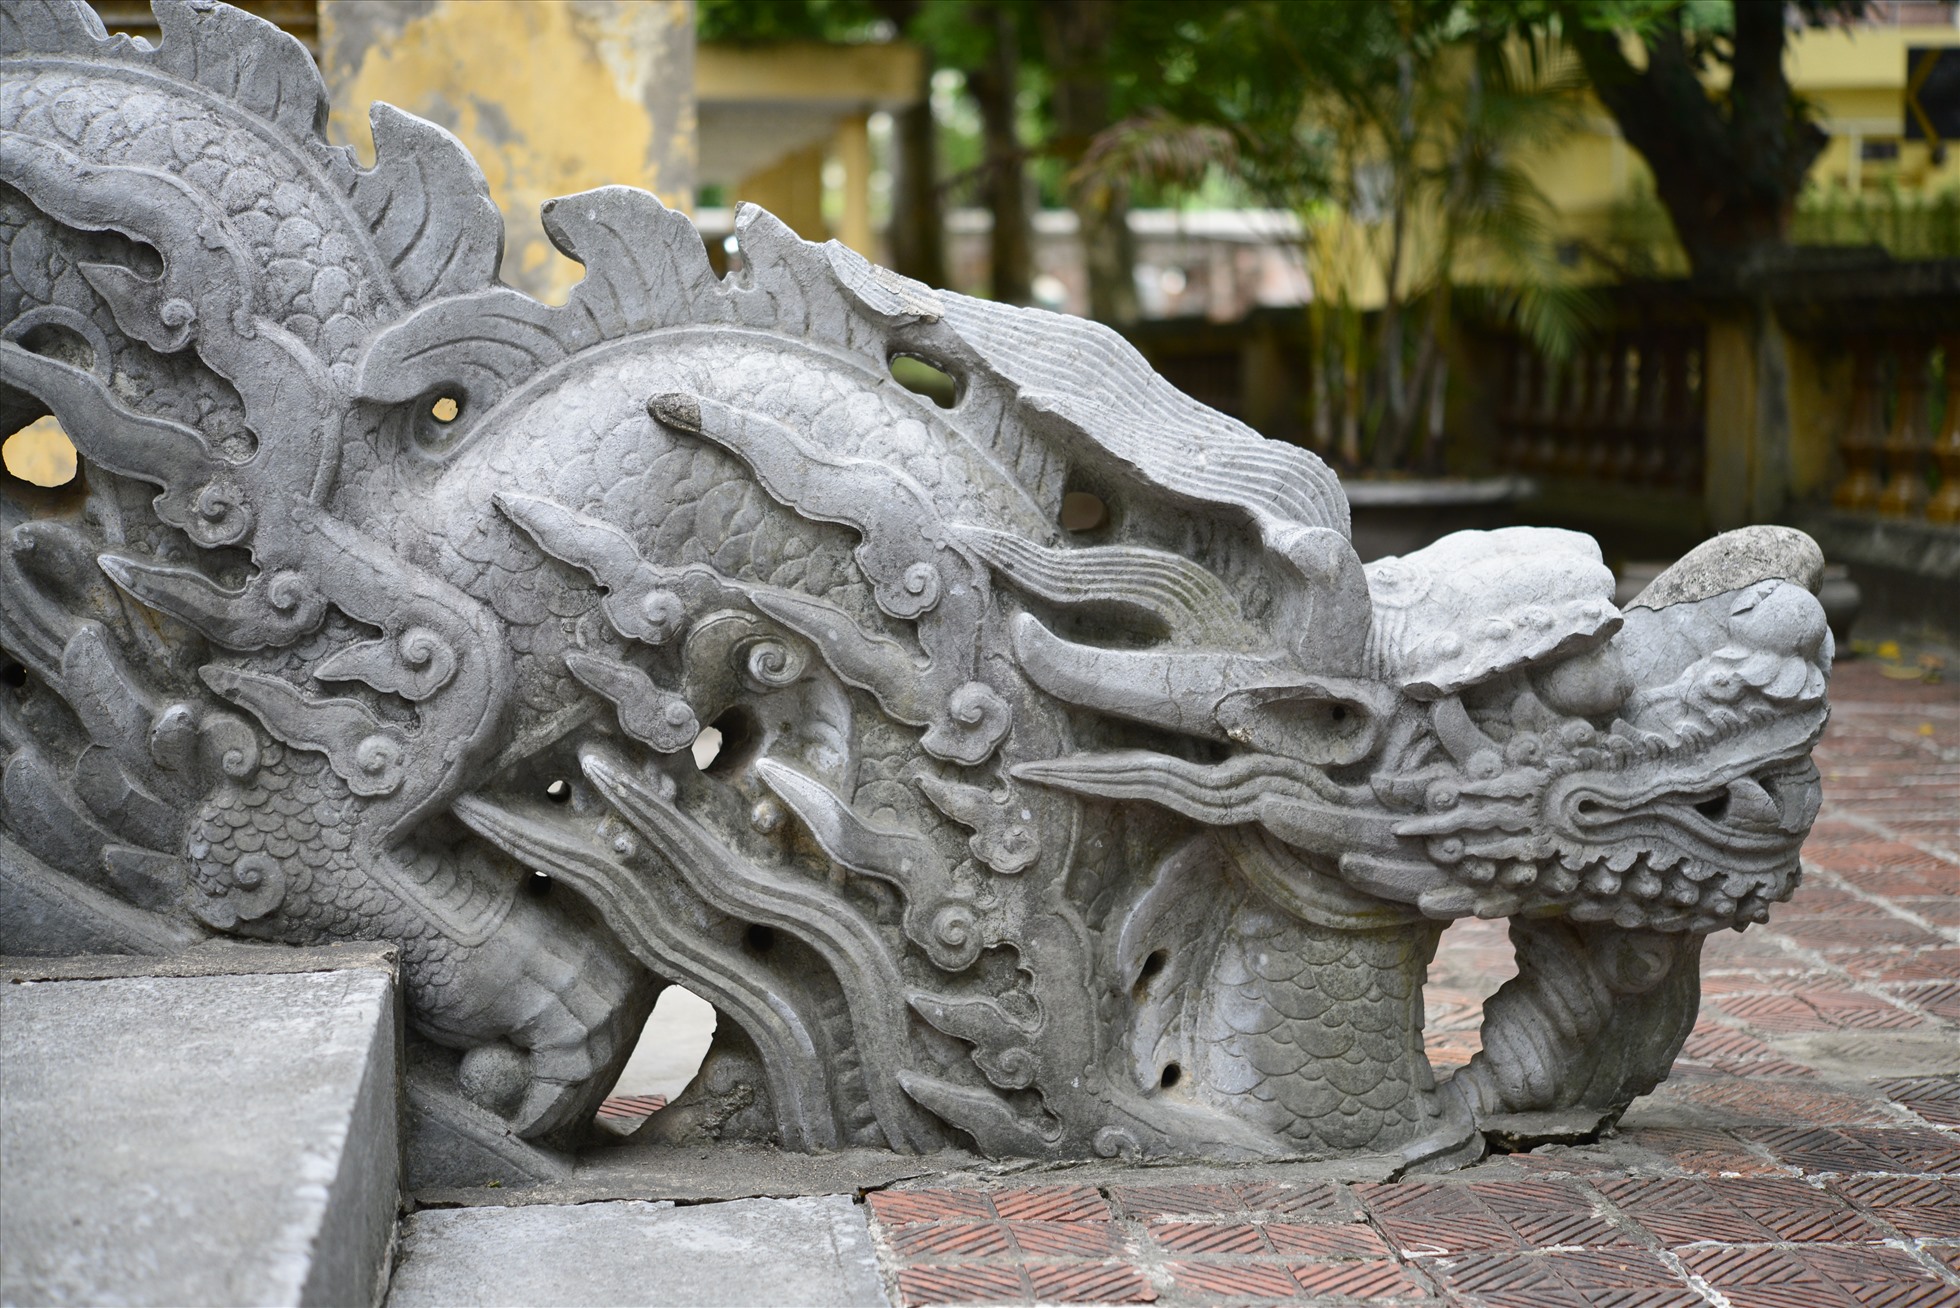 Rồng mang đặc trưng của nghệ thuật điêu khắc thế kỷ XVII-XVIII. Nguồn: Trung tâm Bảo tồn Di sản Thăng Long - Hà Nội